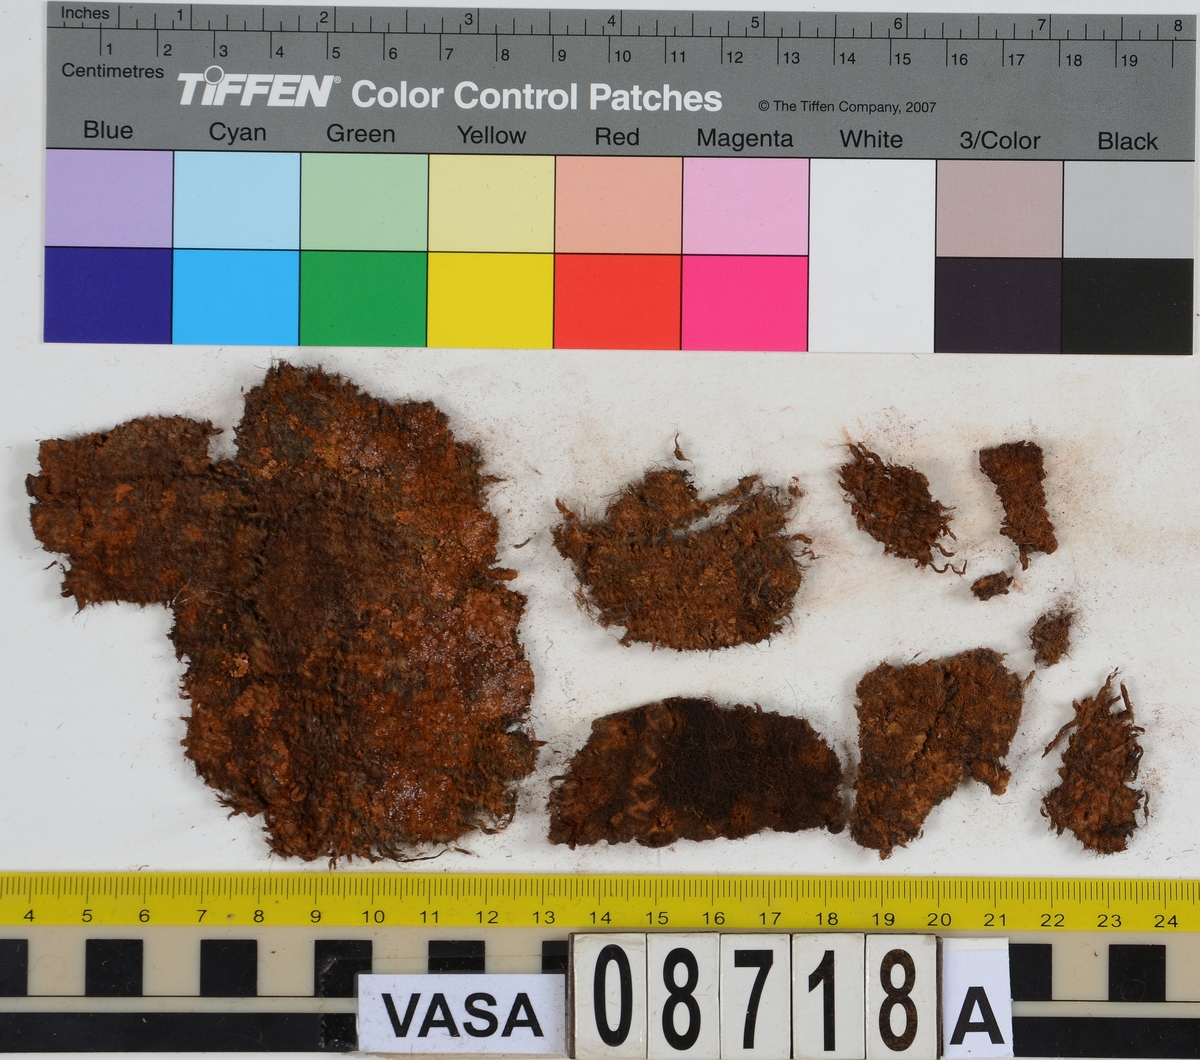 Textilfragment.
12 textilfragment uppdelade på fyndnummer 08718a-c.
Fnr 08718a består av 9 fragment av ull vävt i tuskaft och valkat. Ett av fragmenten har rester av en söm.
Fnr 08718b består av ett fragment av ull vävt i 2/2-kypert.
Fnr 08718c består av 2 fragment av ull vävt och med knutar på väven i en rad. Eventuellt är detta ett fragment från en rya.